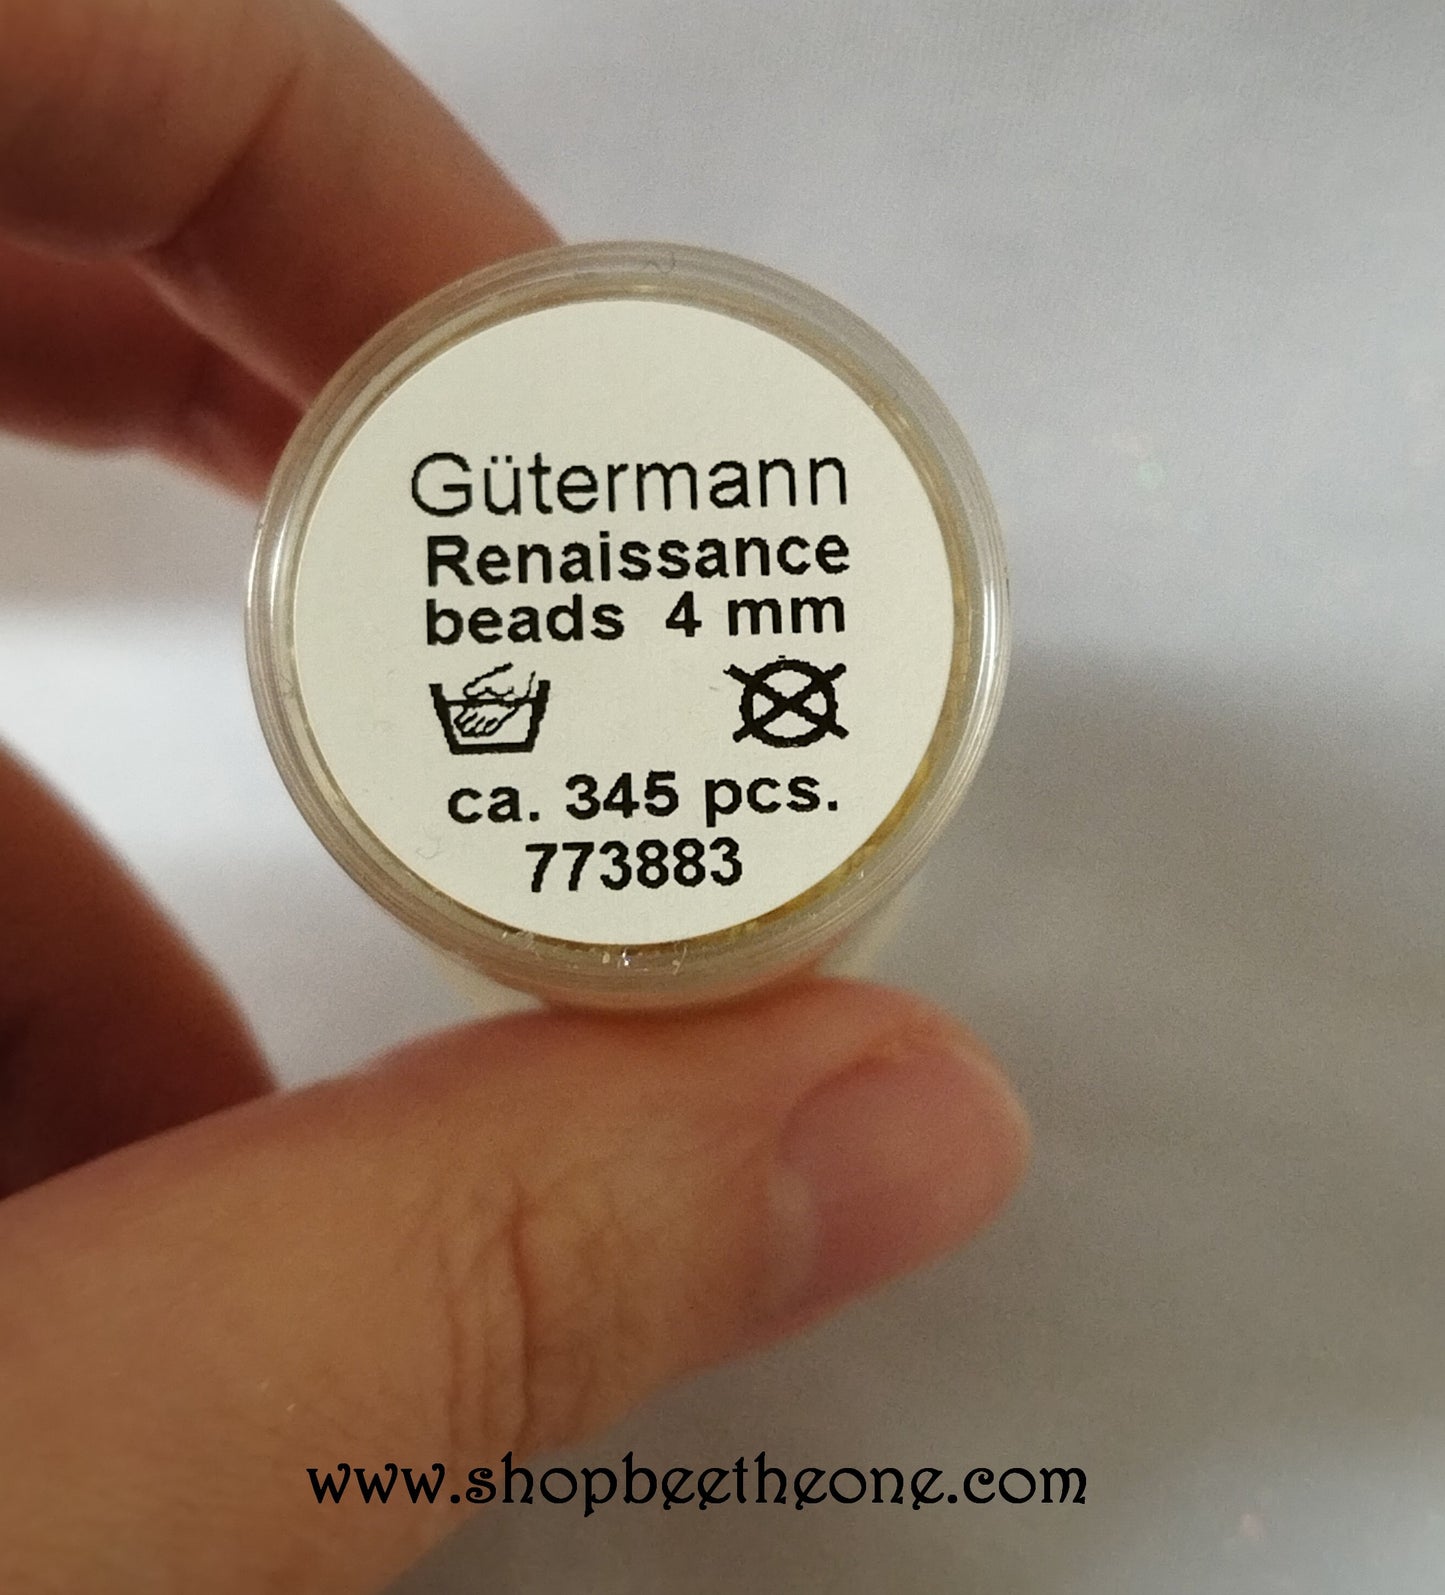 Lot de 10 Perles rondes en verre Gütermann Renaissance - 4 mm - 2 coloris